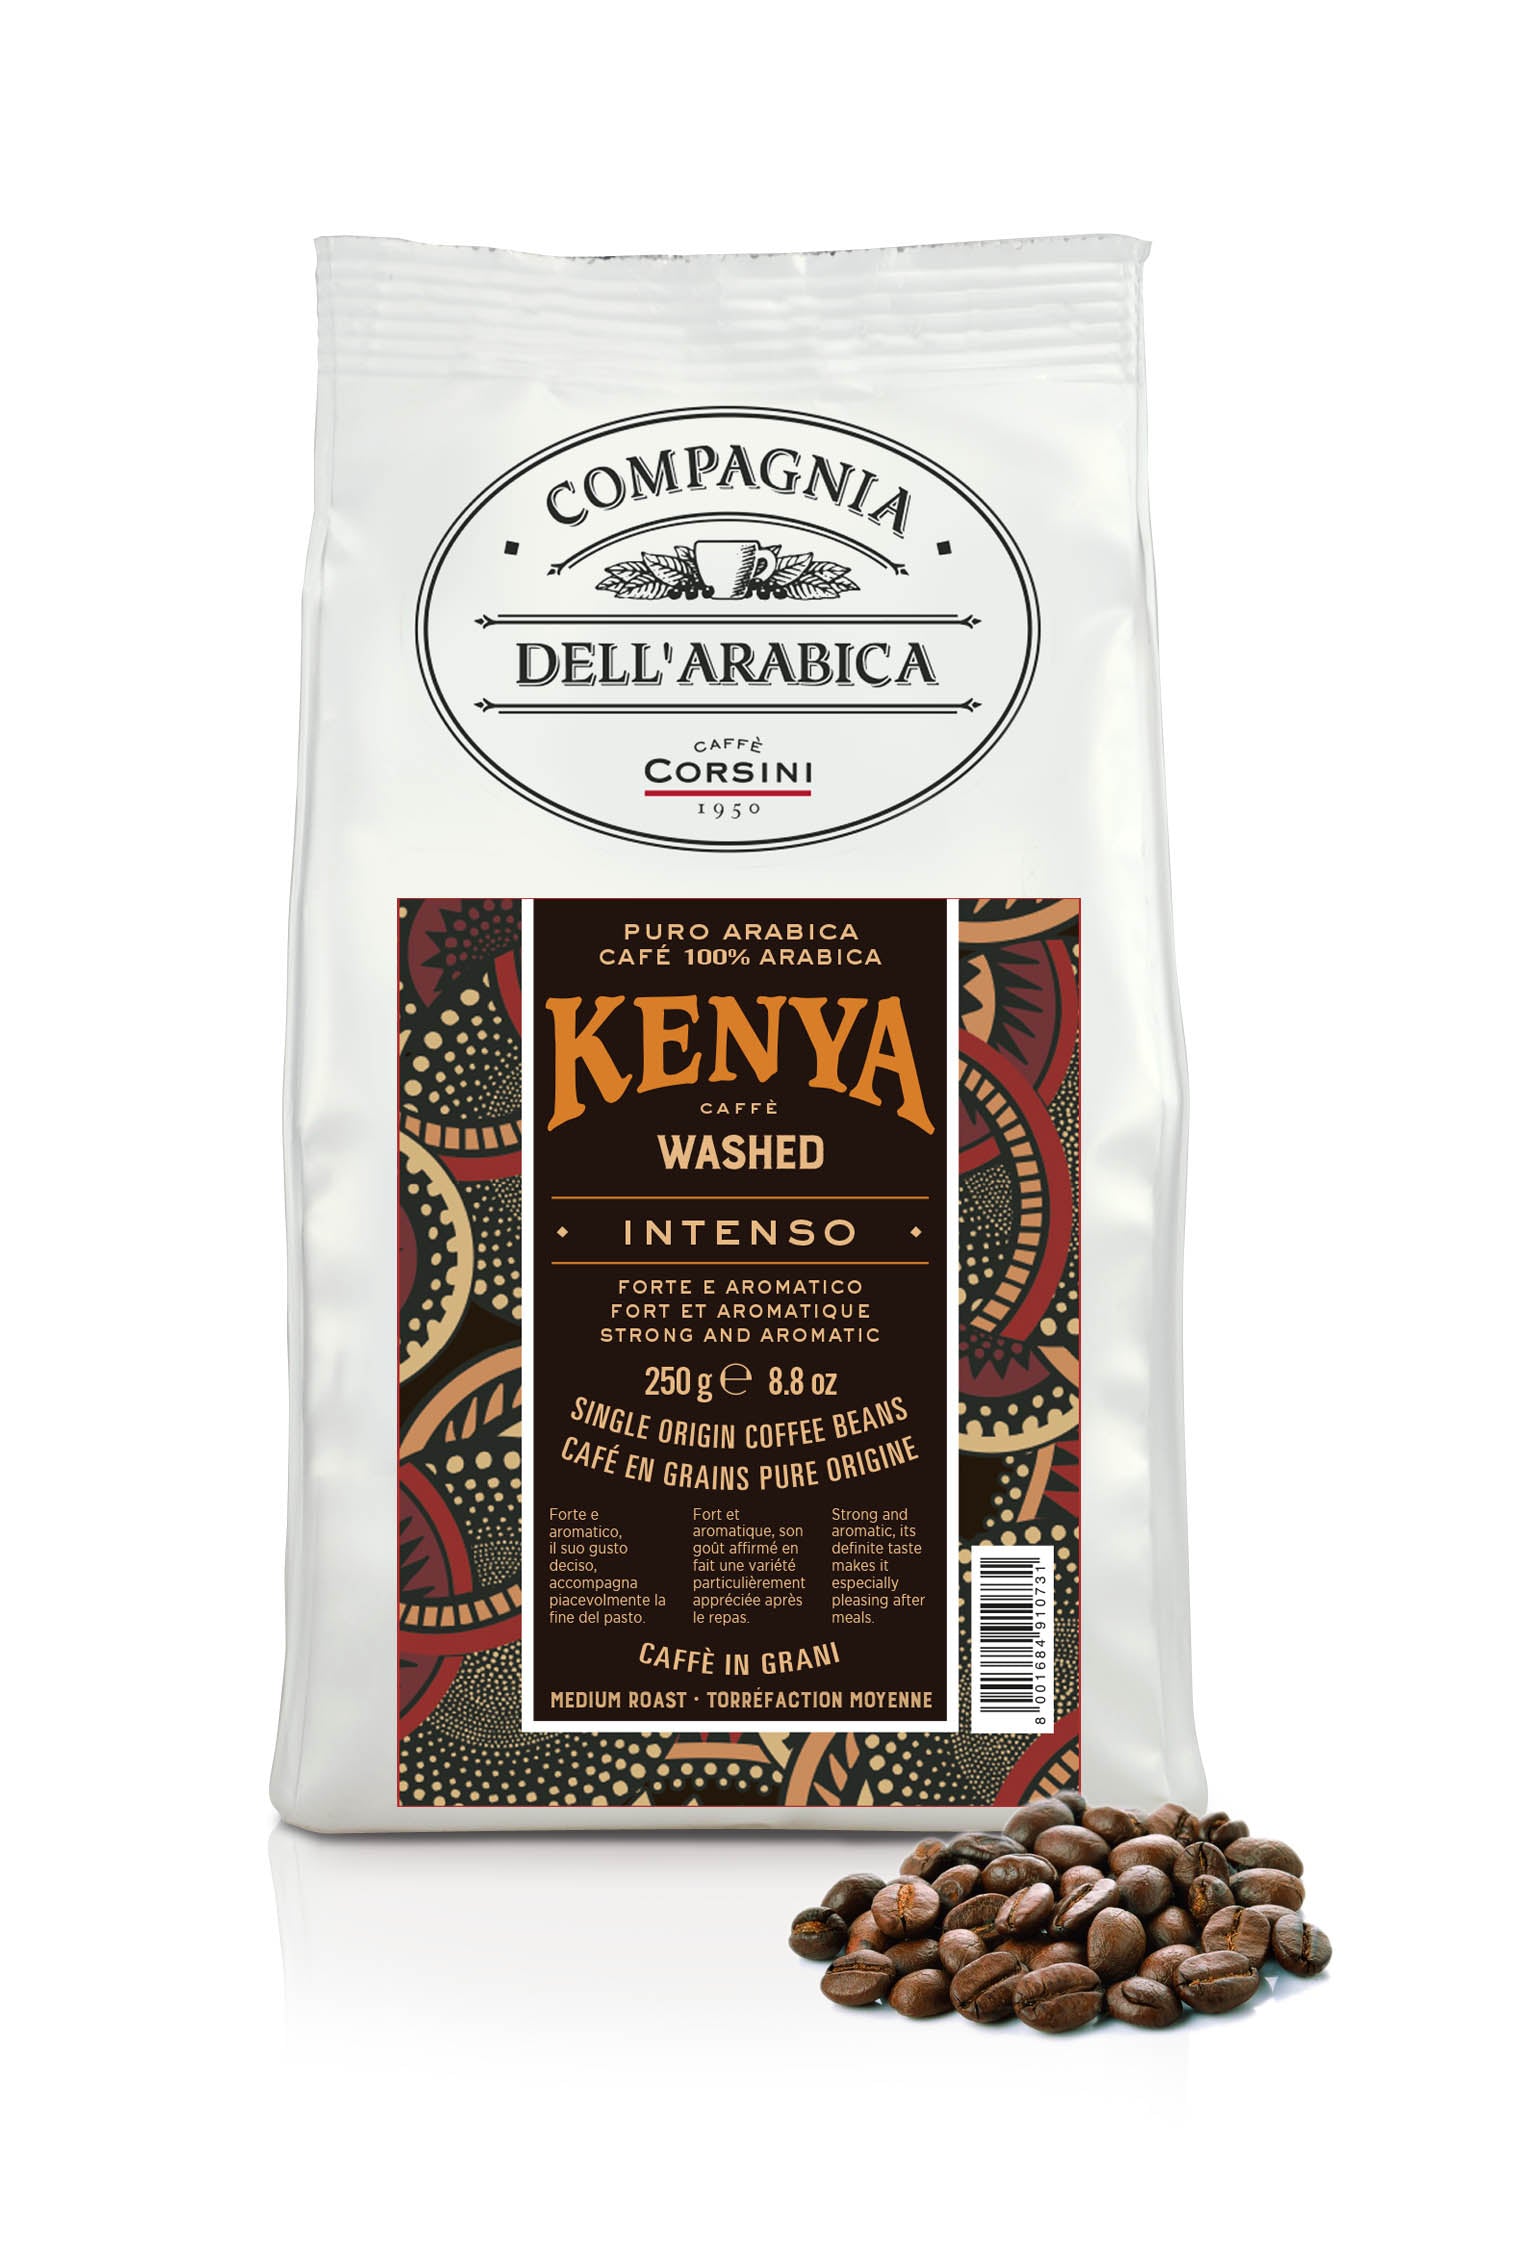 Caffè in grani | Kenya Washed | 100% Arabica | 250g | Cartone con 12 confezioni